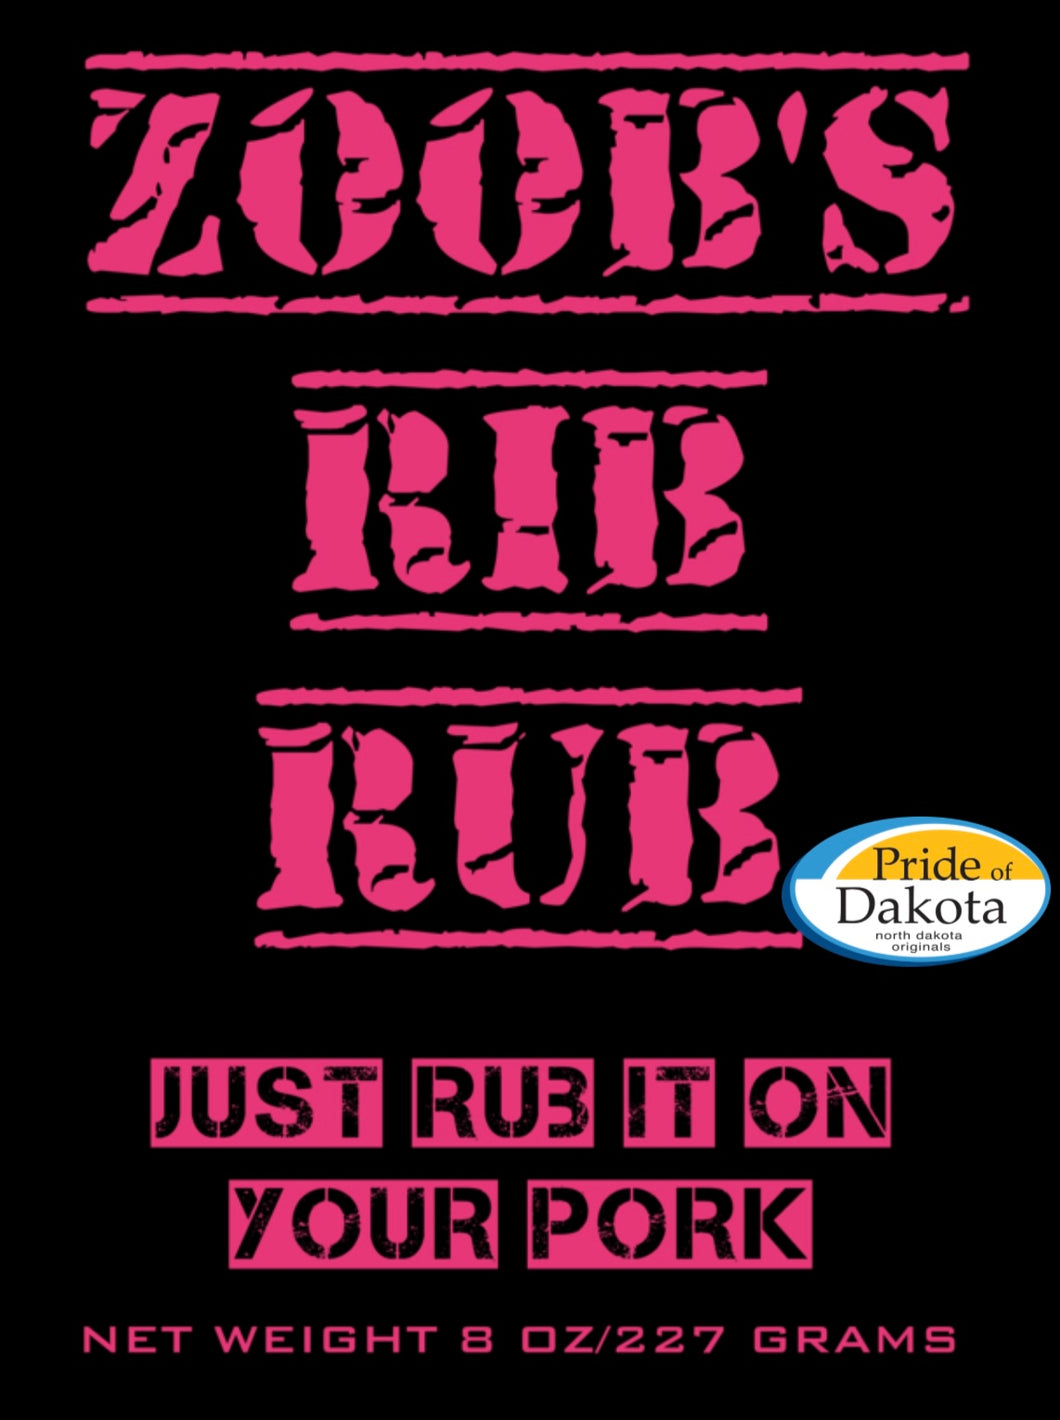 Zoob's Rib Rub